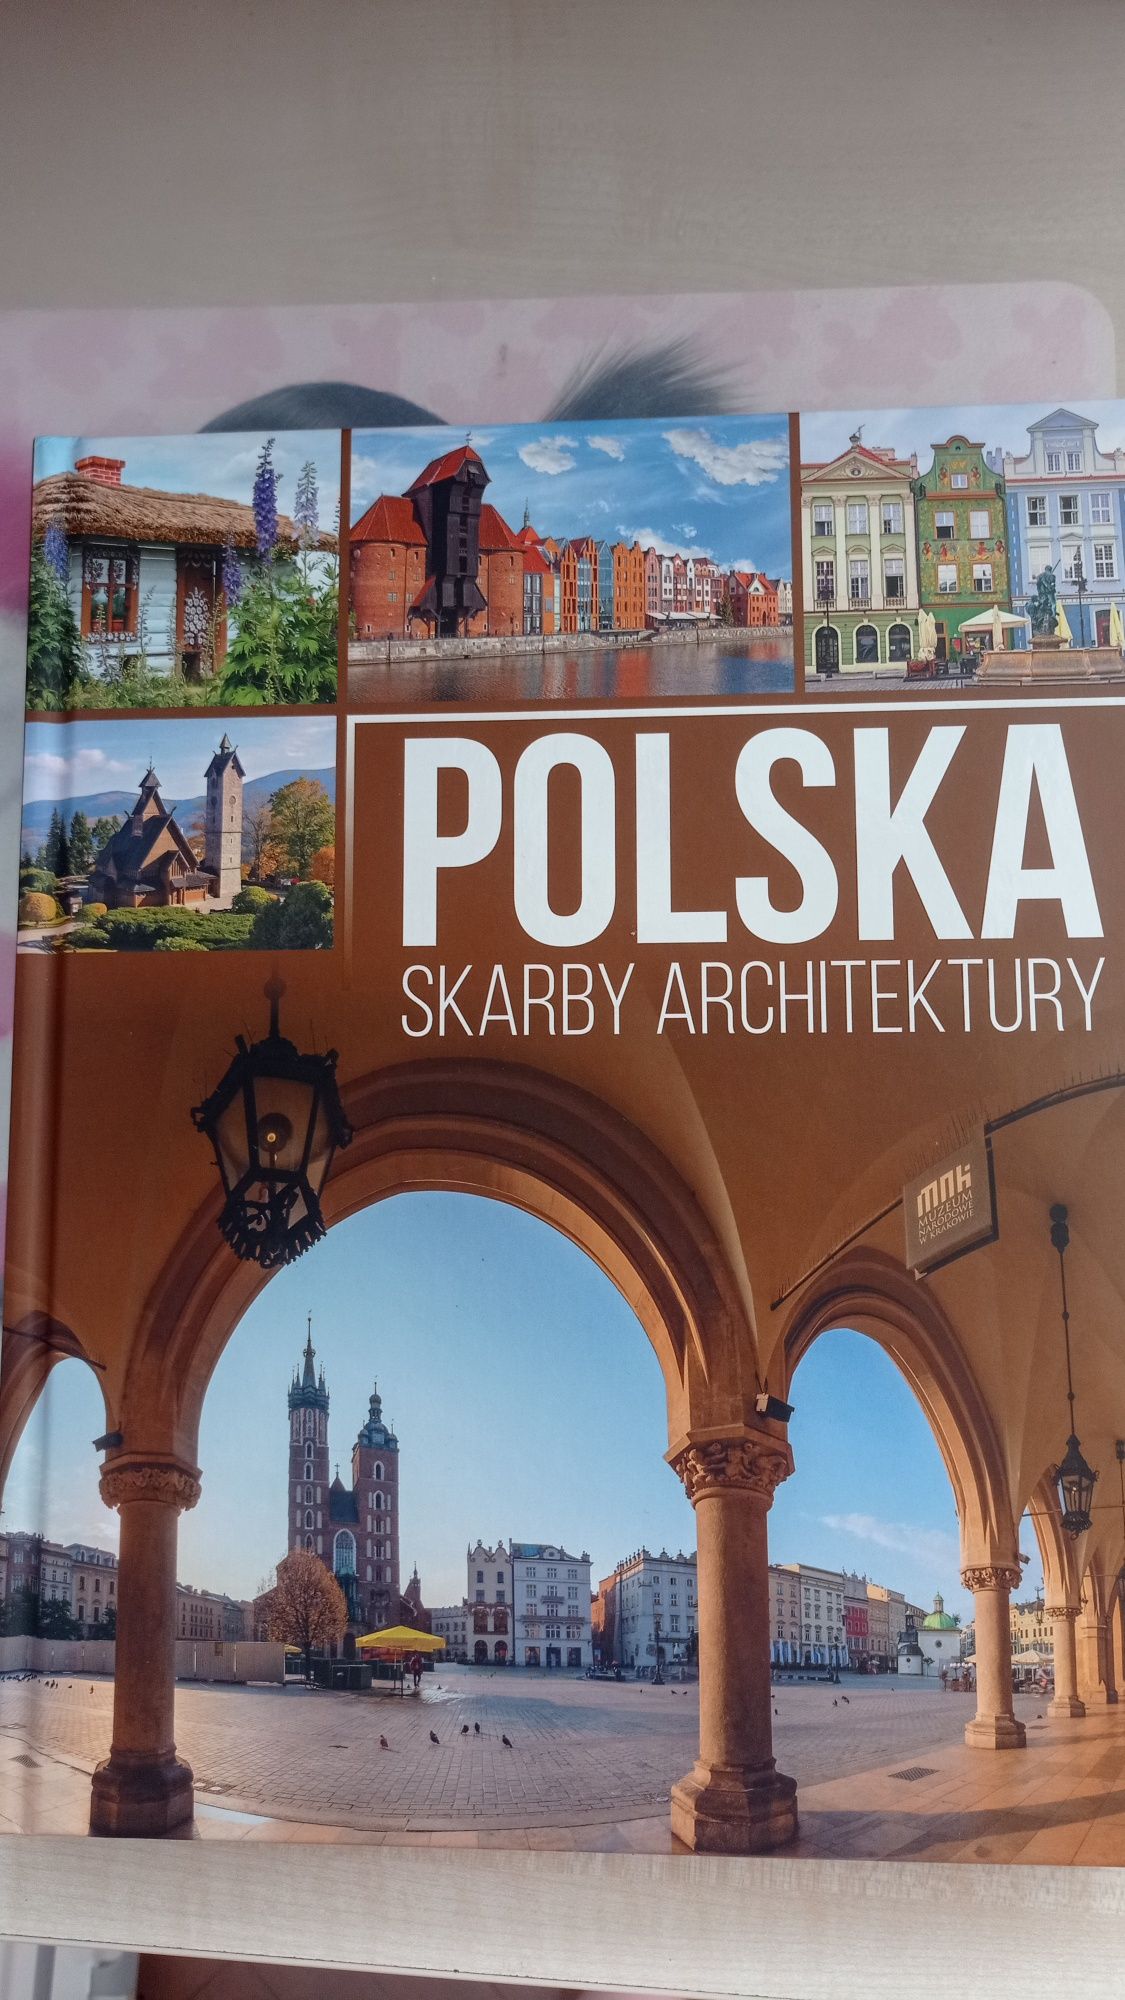 Książka "Polska skarby architektury